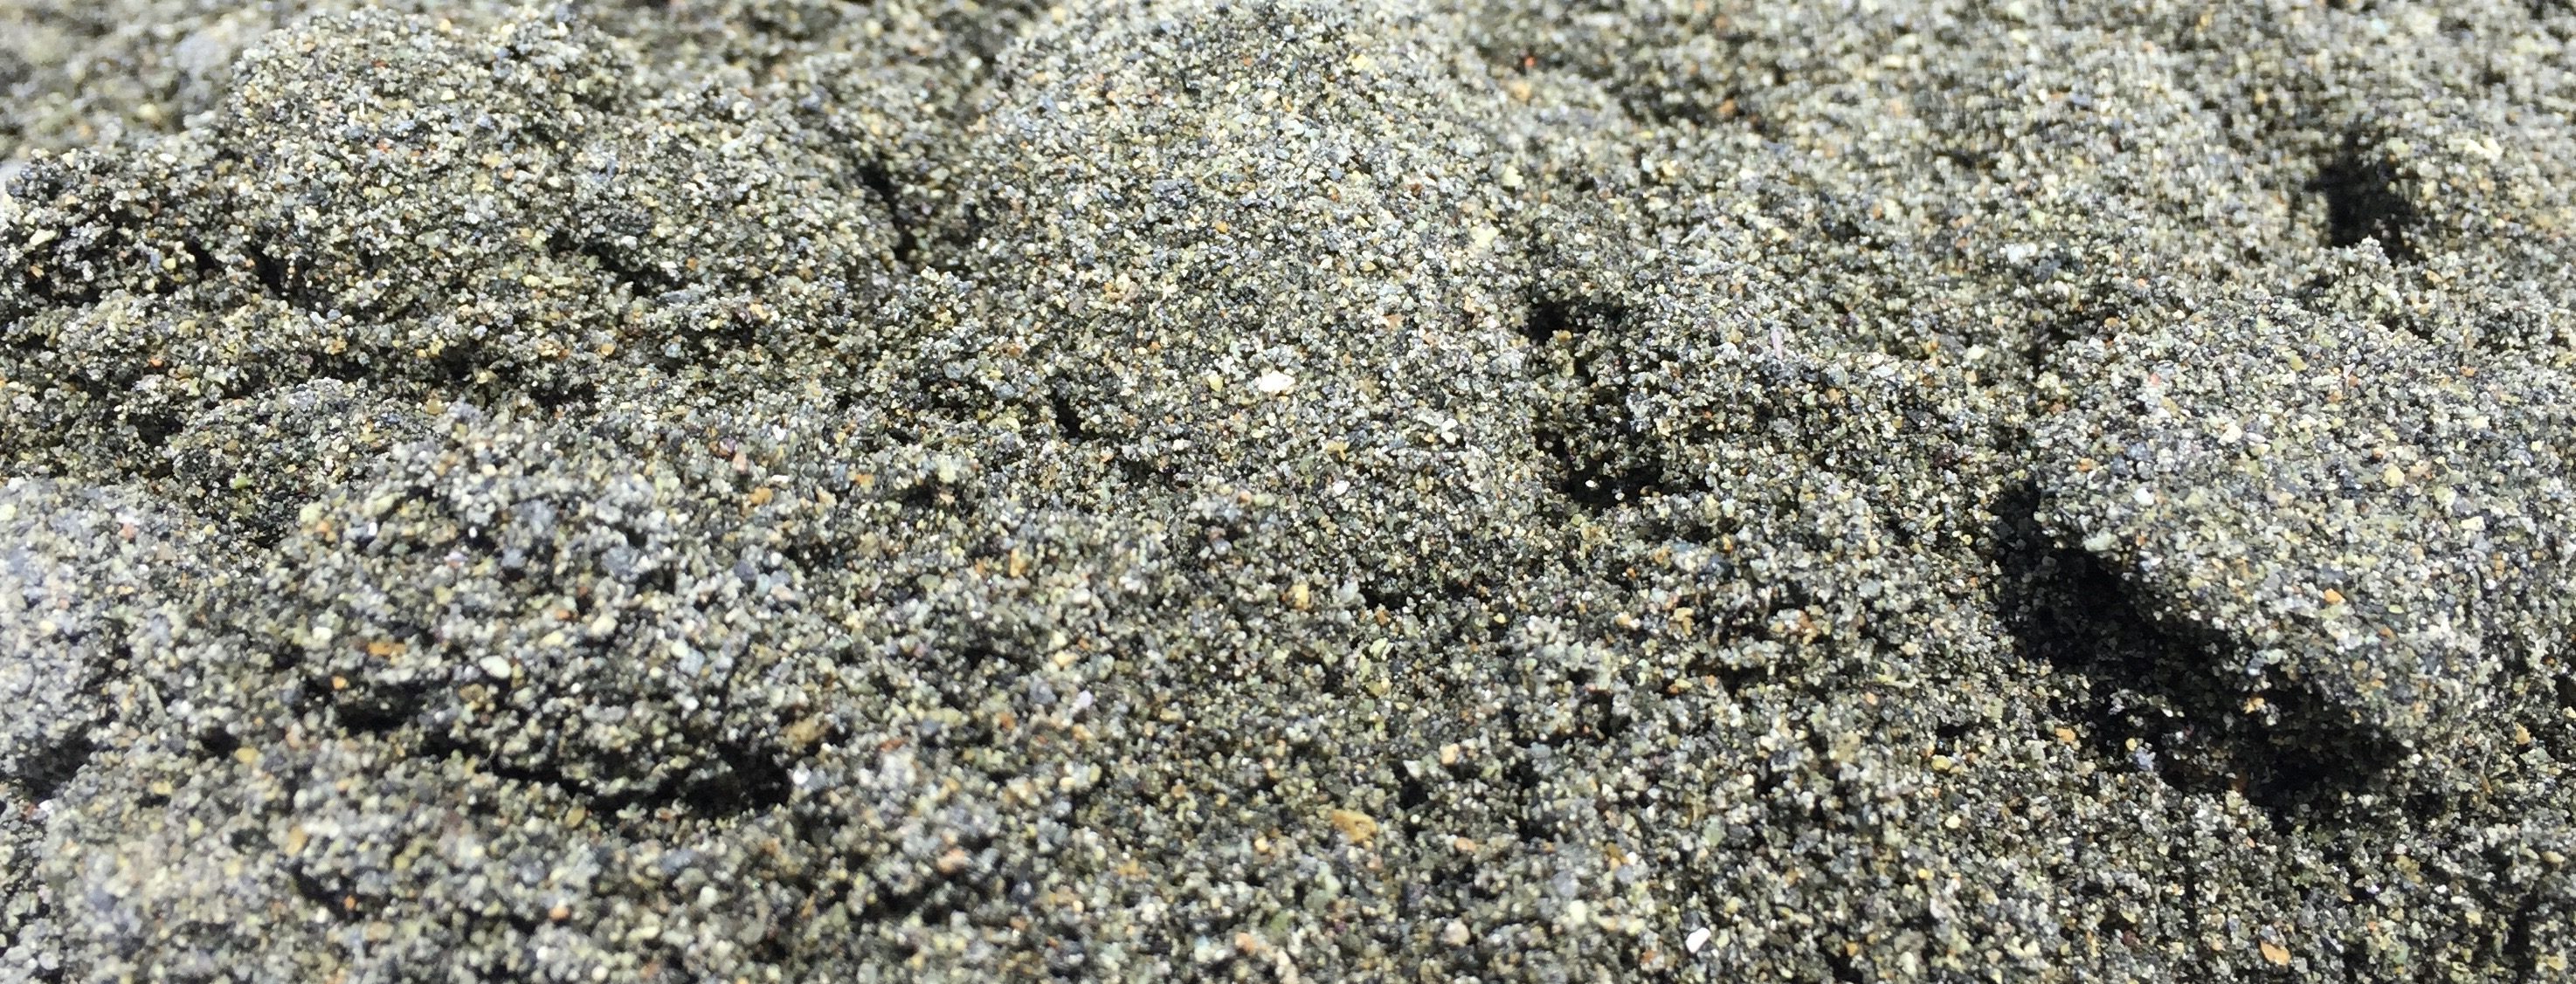 Дунитовый песок